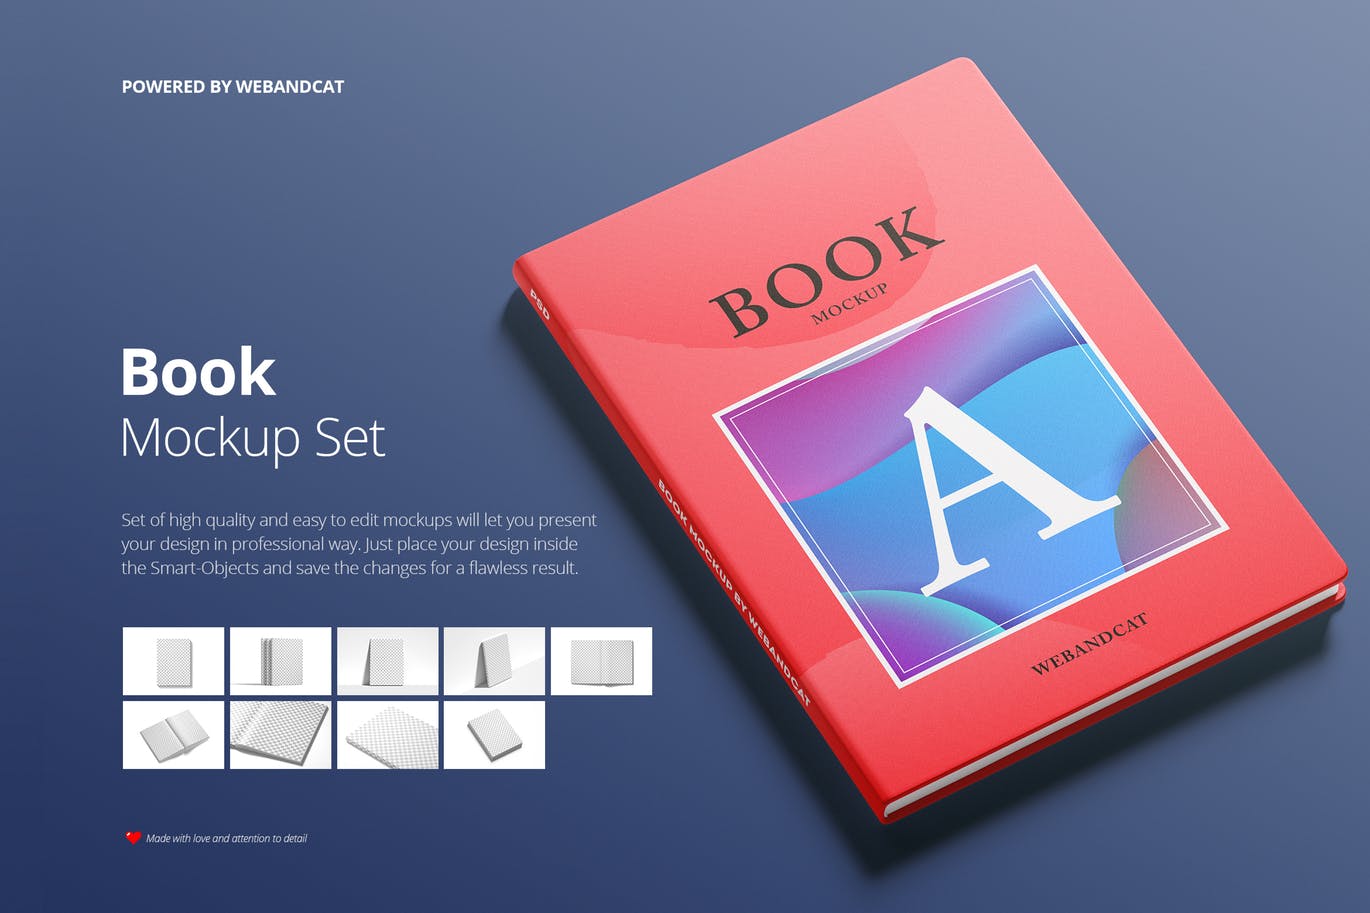 9套高质量且易于编辑记事本/书籍样机16图库精选 Book Mockup Set插图